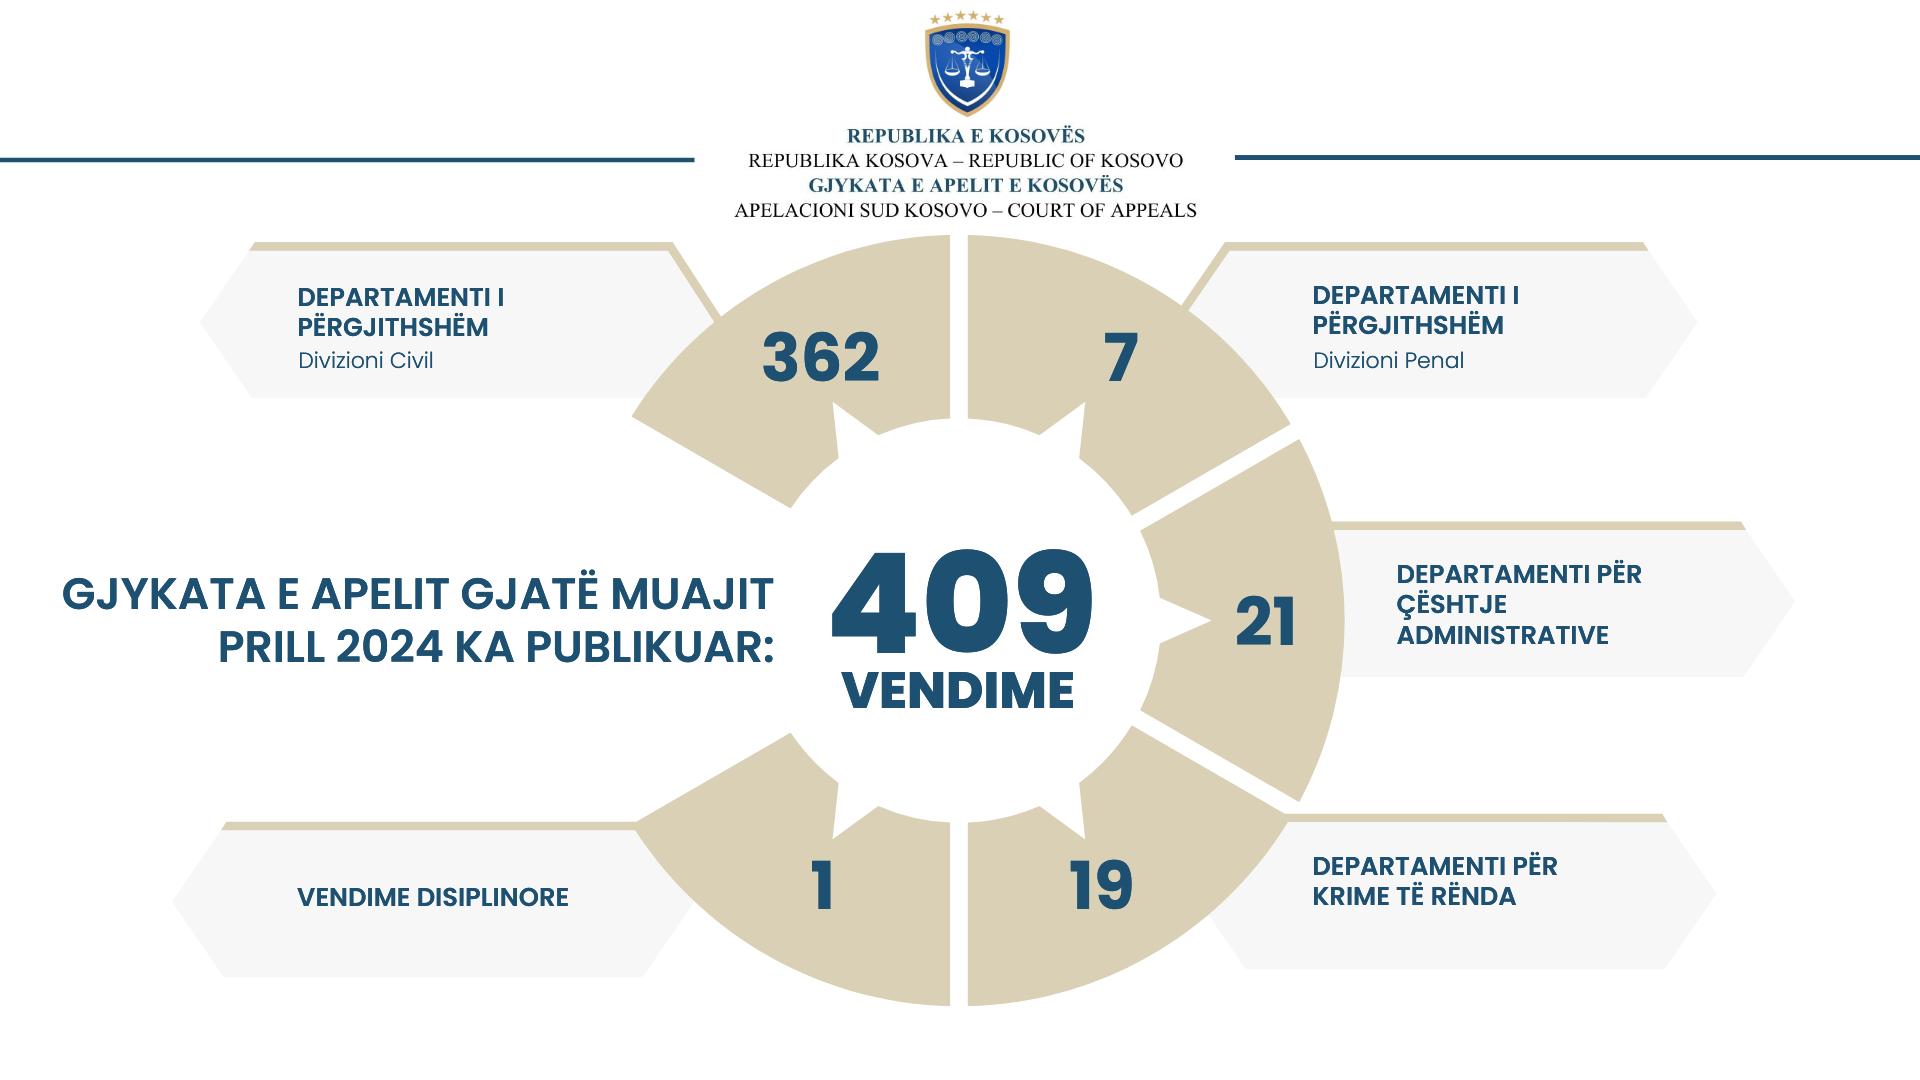 Apelacioni sud Kosova objavio je 409 odluka tokom aprila meseca